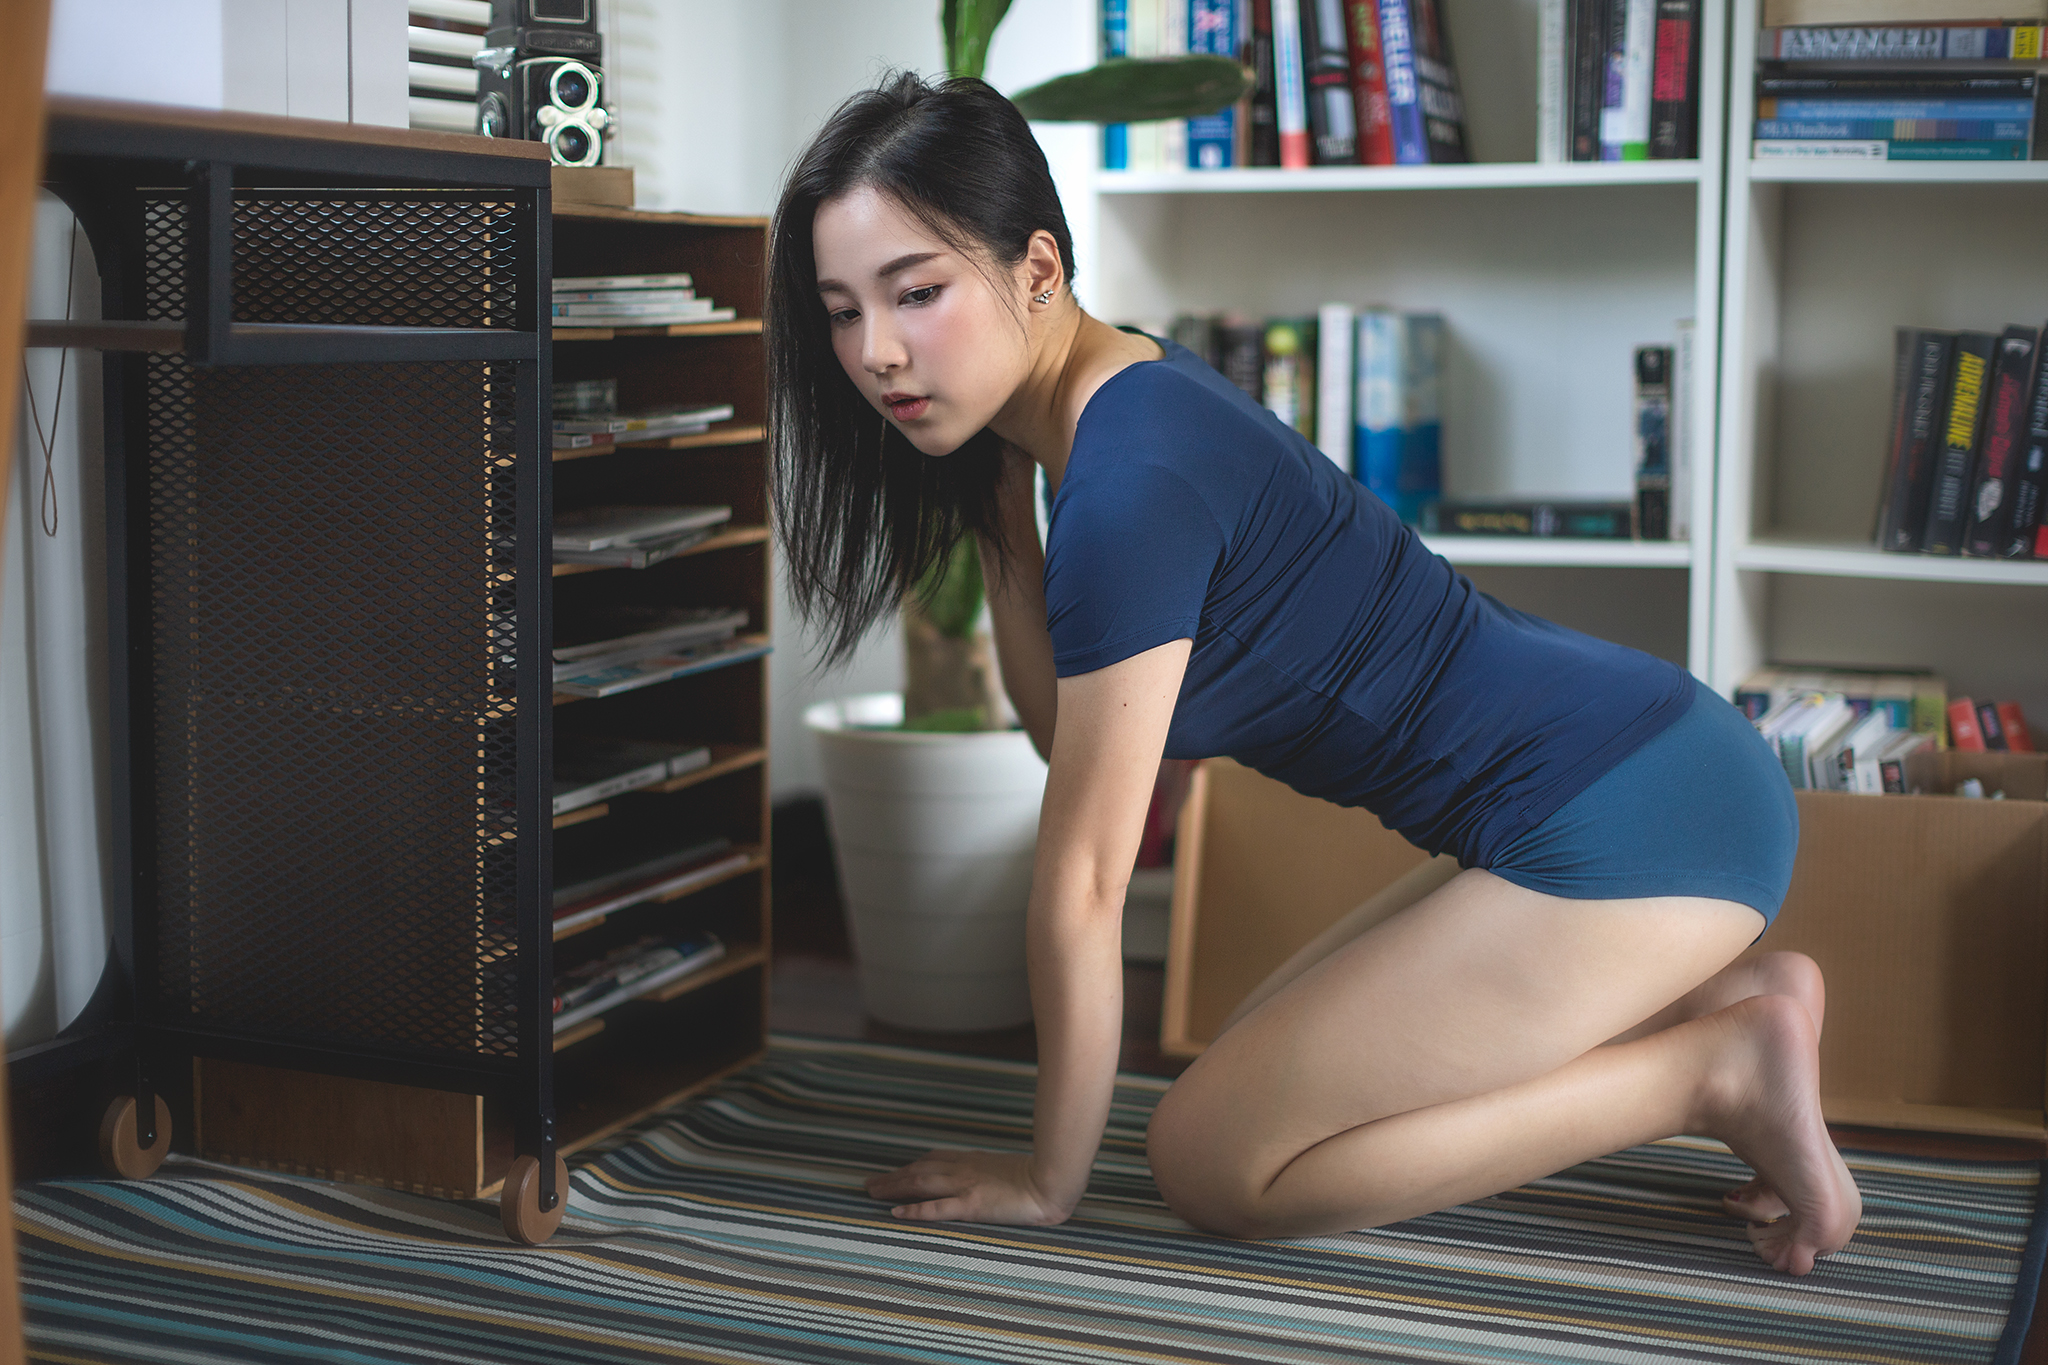 Asian Women Model Brunette Boyshorts Blue Tops Barefoot Books Bookcase Carpets 2048x1365